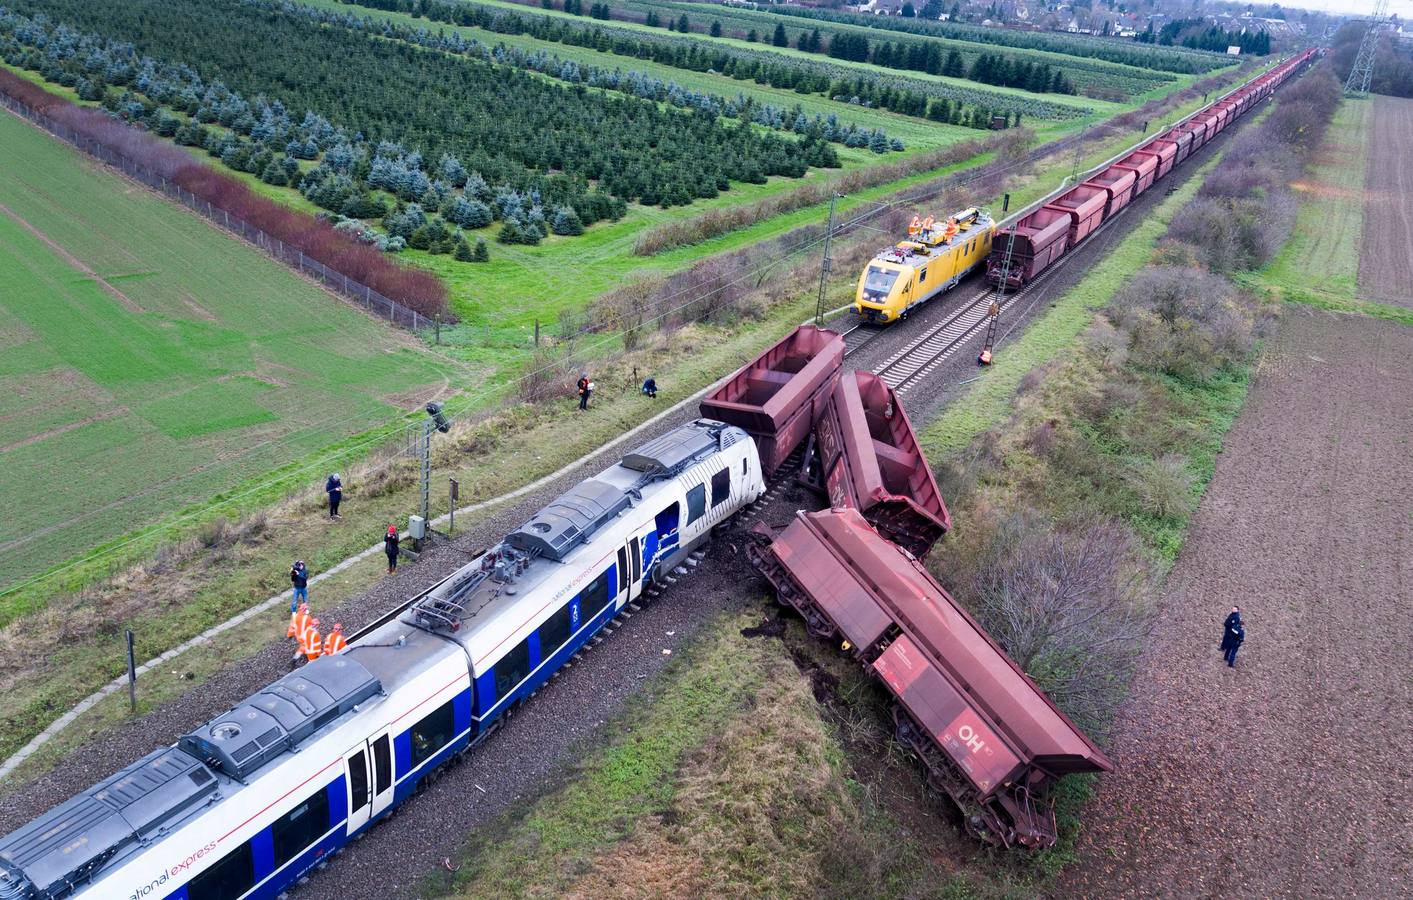 41 personas resultaron heridas en el choque de dos trenes en Meerbusch, oeste de Alemania, ocurrido en la noche del martes.